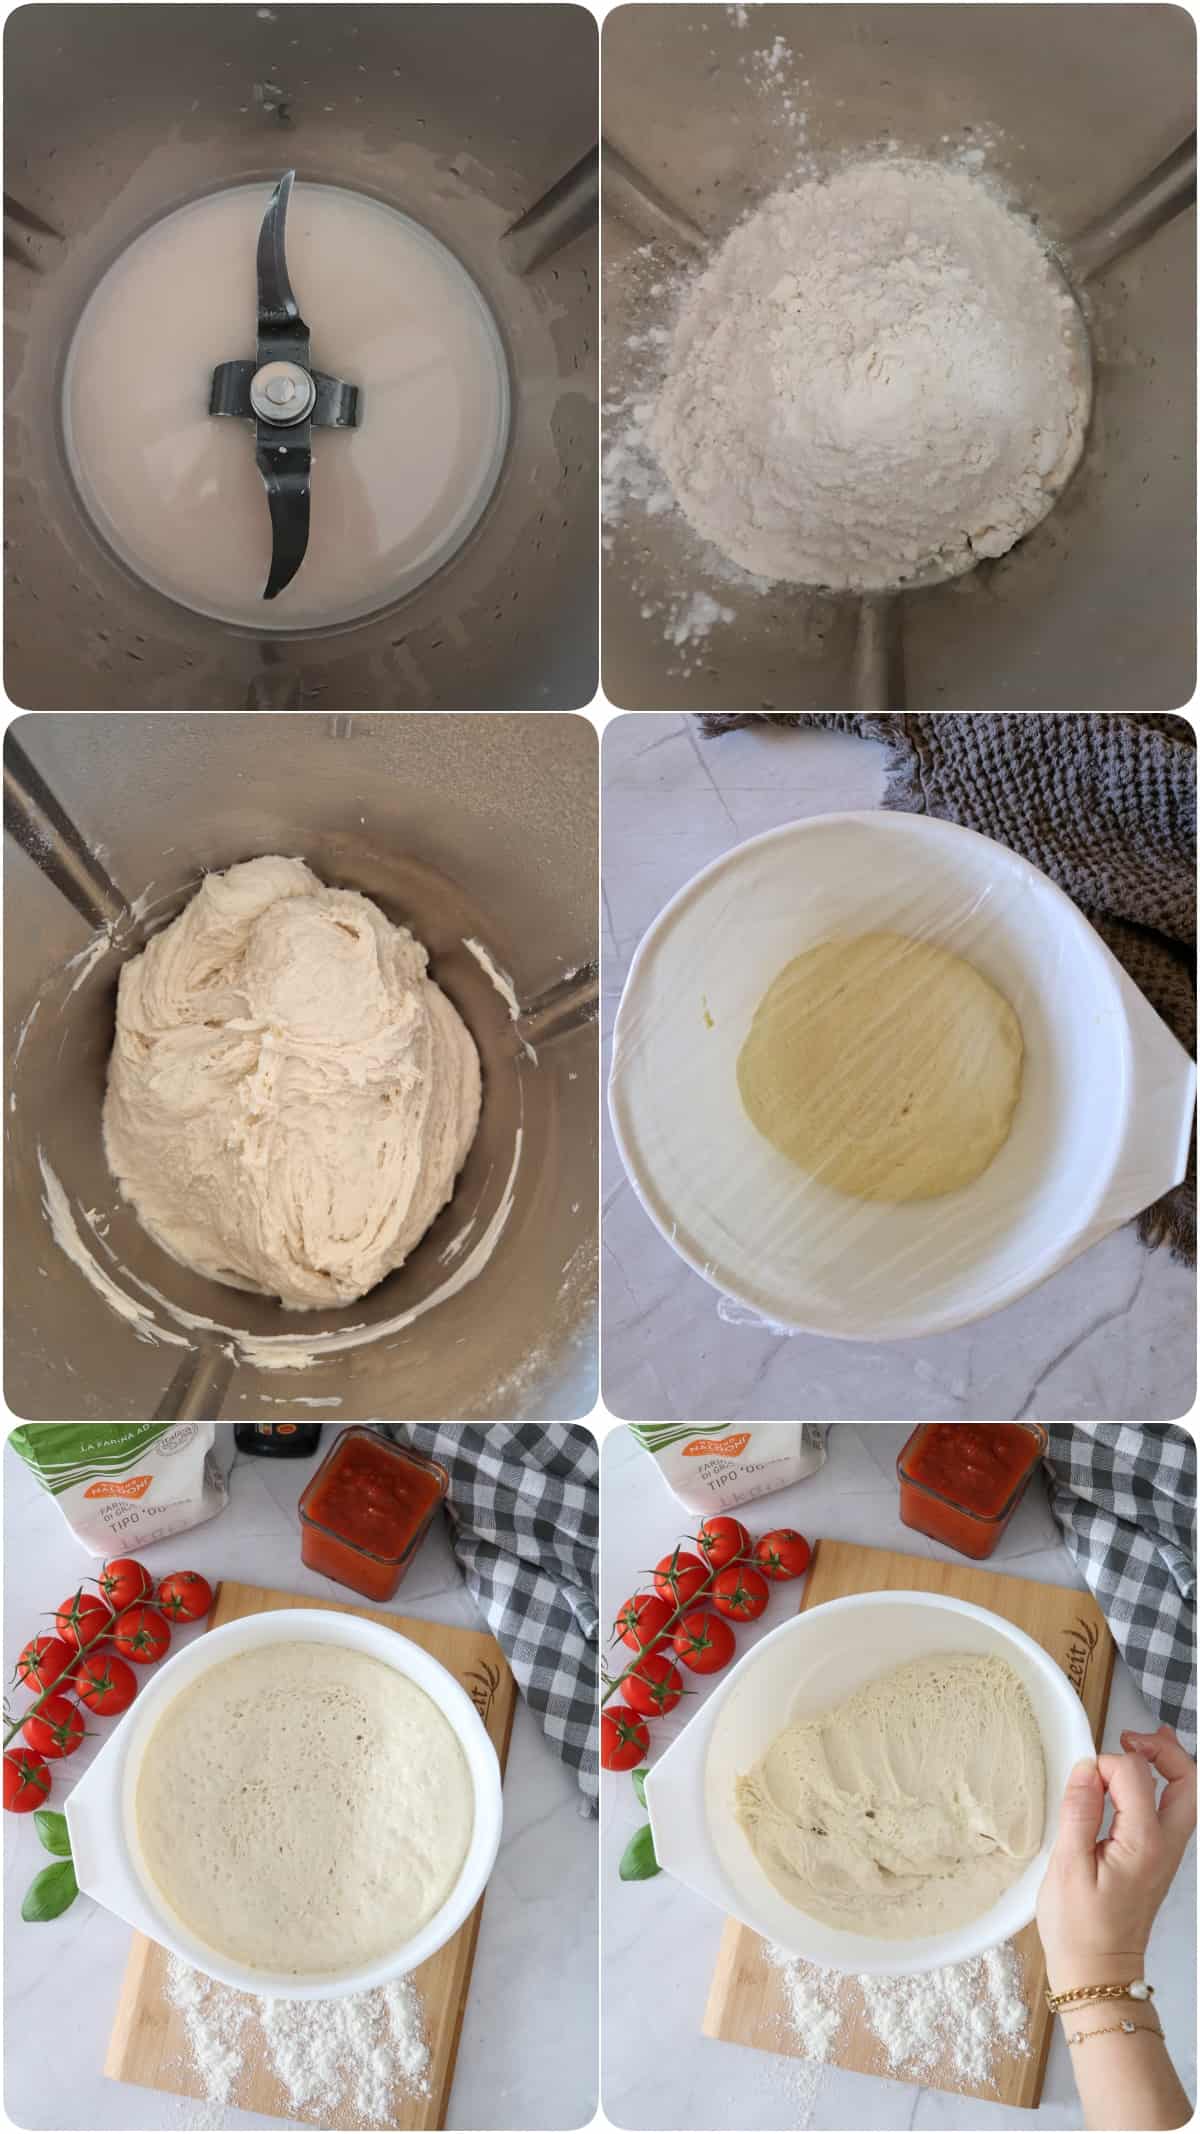 Eine Collage der Zubereitungsschritte von Pizzateig mit frischer Hefe im Thermomix®.